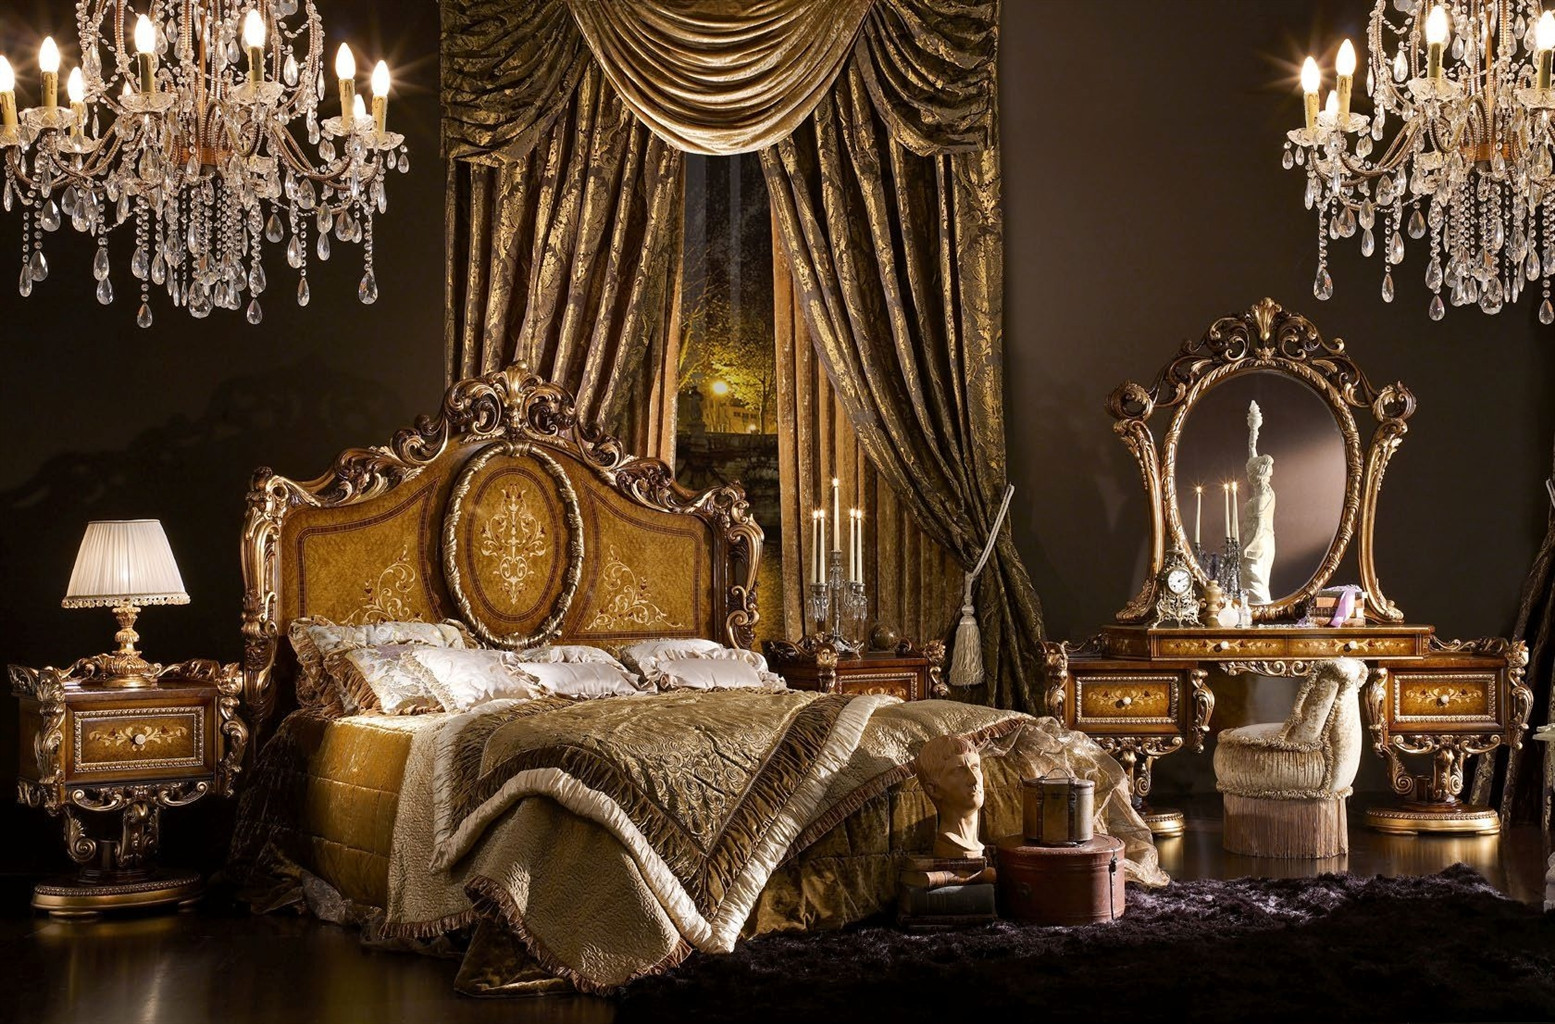 King Size Master Bedroom Sets
 King Size Bed for Master Bedroom